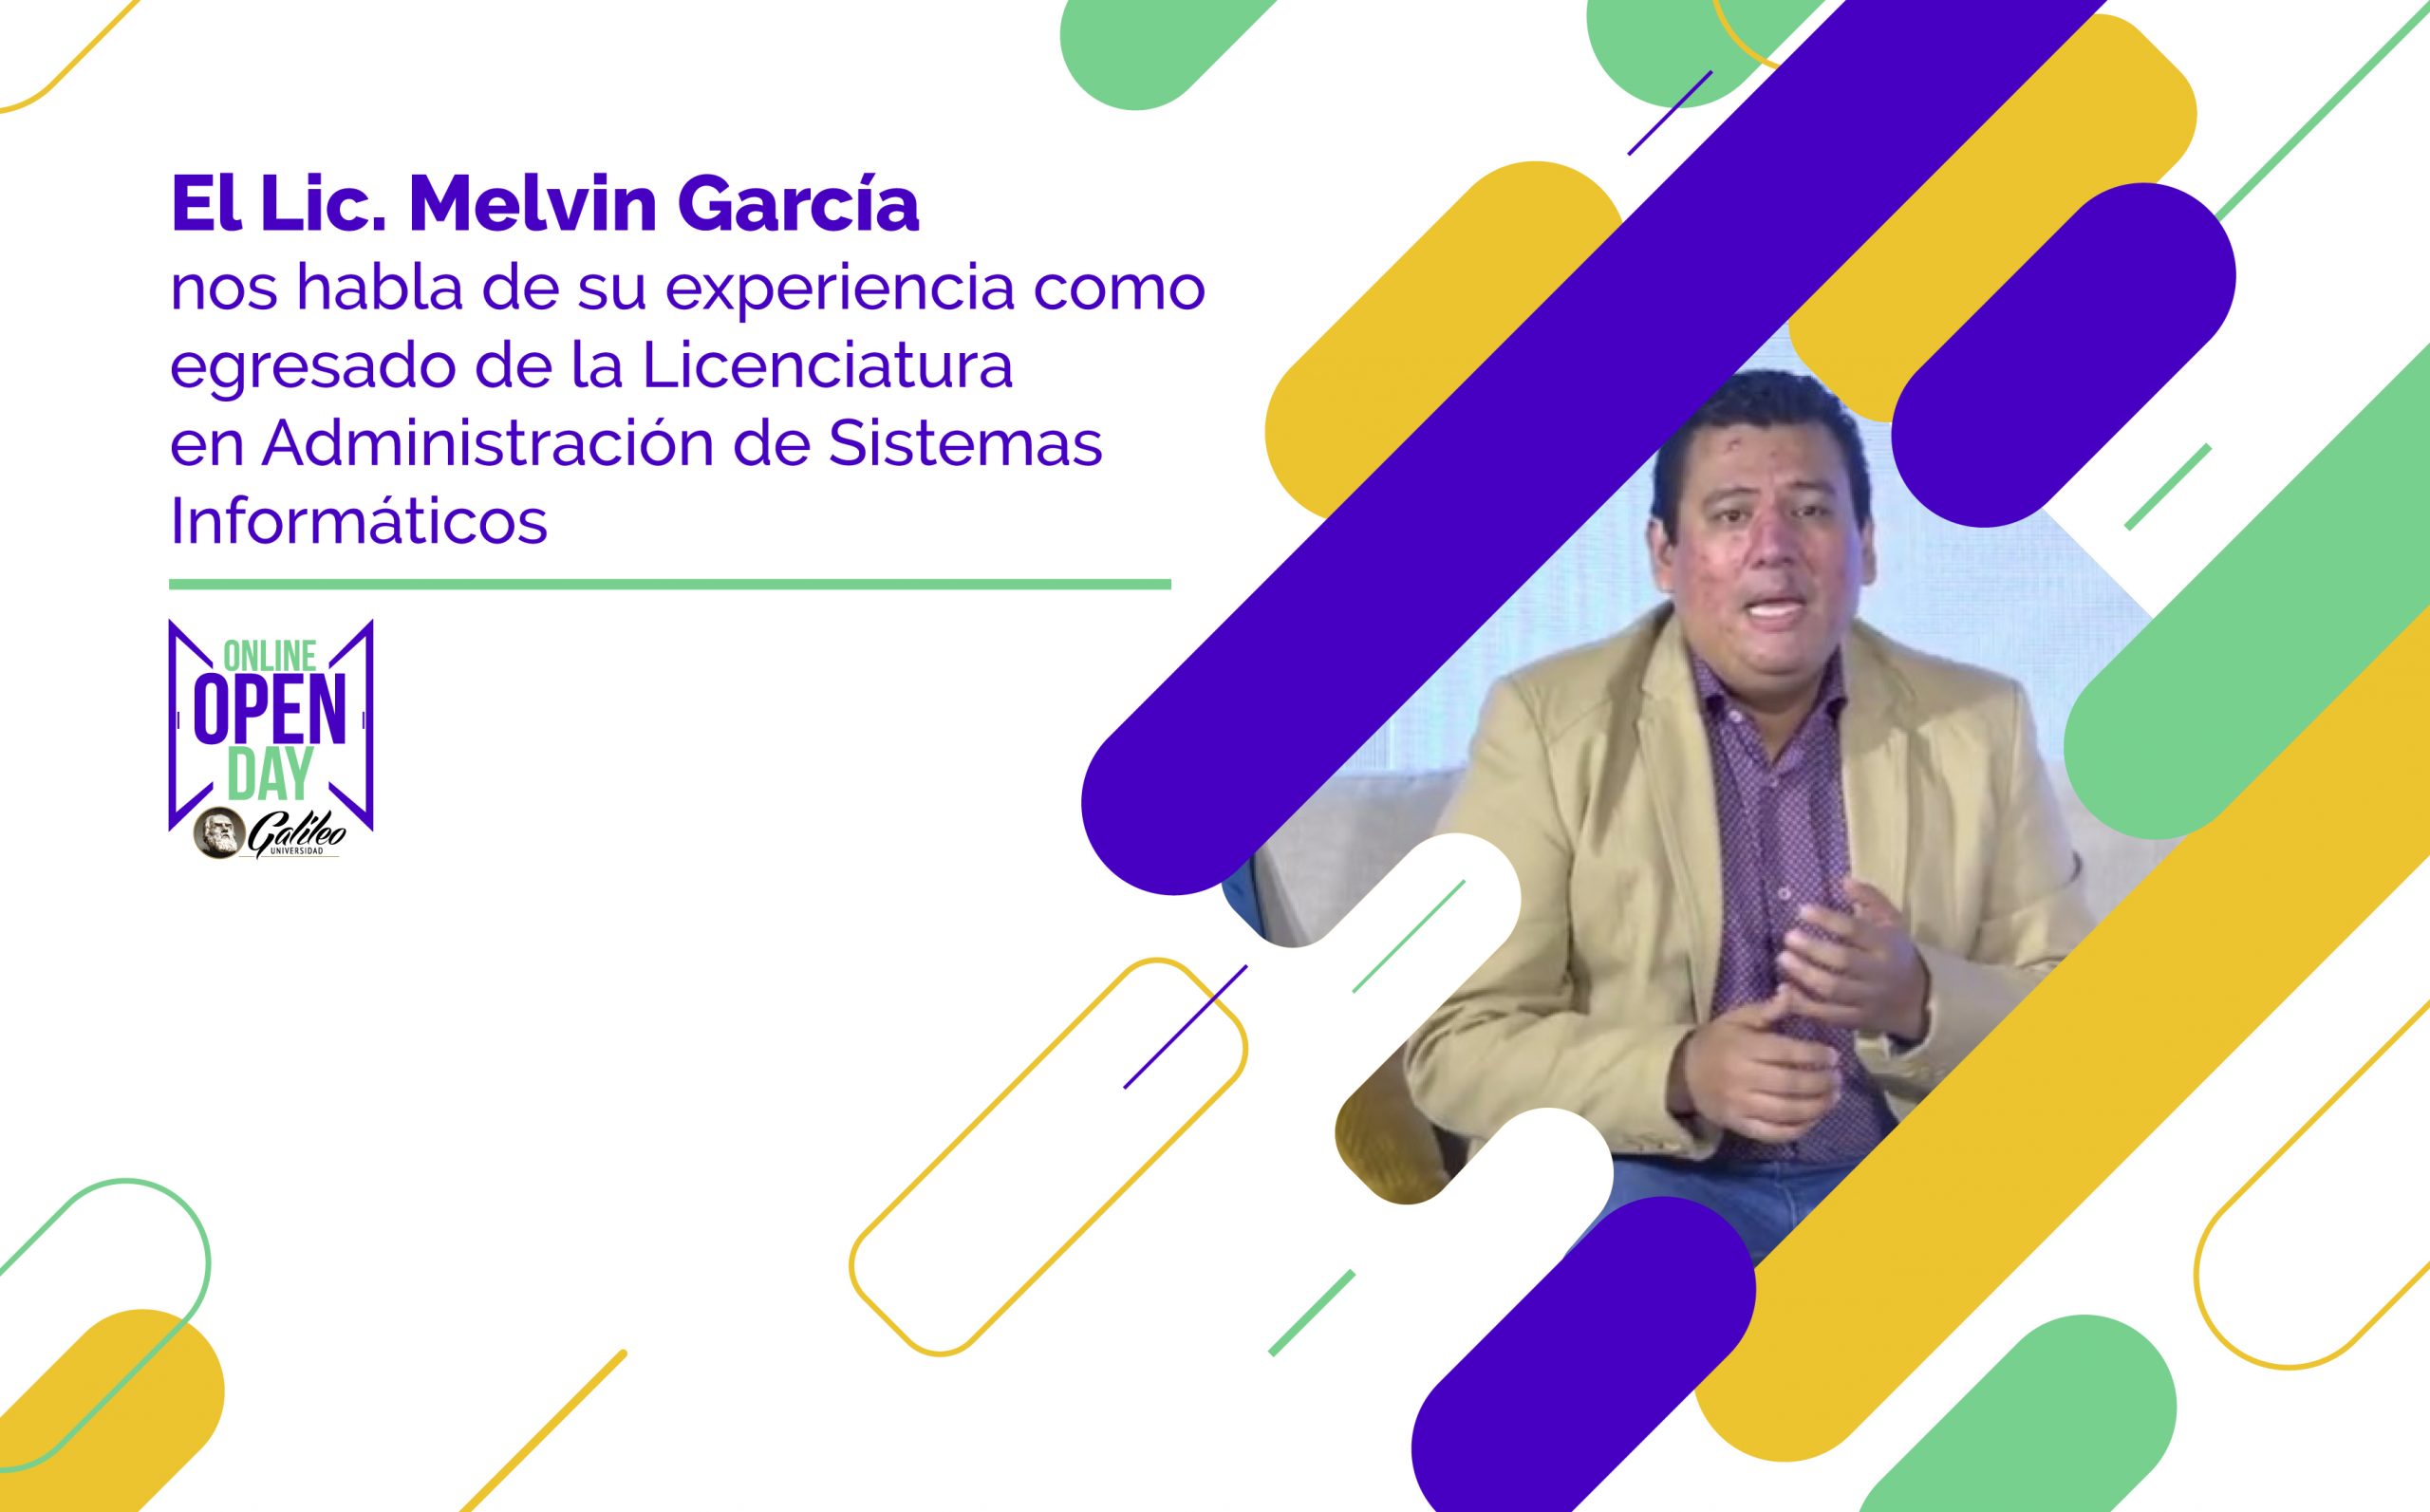 El Lic. Melvin García nos habla de su experiencia como egresado de la Licenciatura en Administración de Sistemas Informáticos